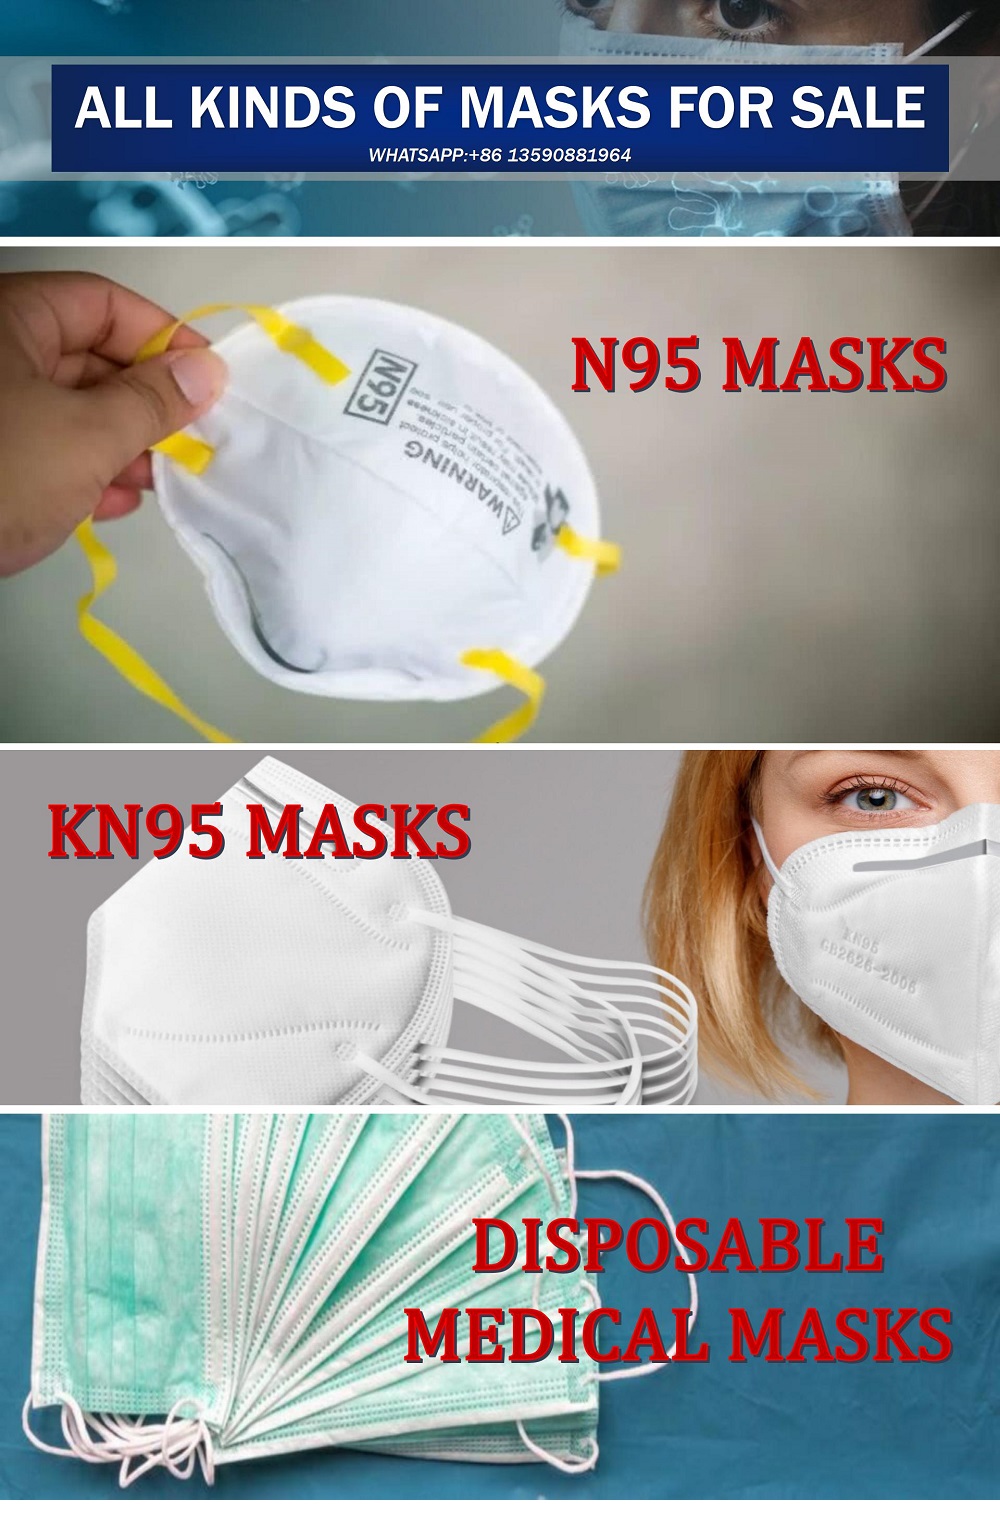 masks,face masks,masks factory,masks manufacturer,3M,3M masks,N95,N95 masks,kn95,kn95 masks,disposable masks,medical masks,protective masks,COVID19,COVID19 masks,ffp3 masks,ffp2 masks,masks machine,virus masks,pm2.5 masks,children masks